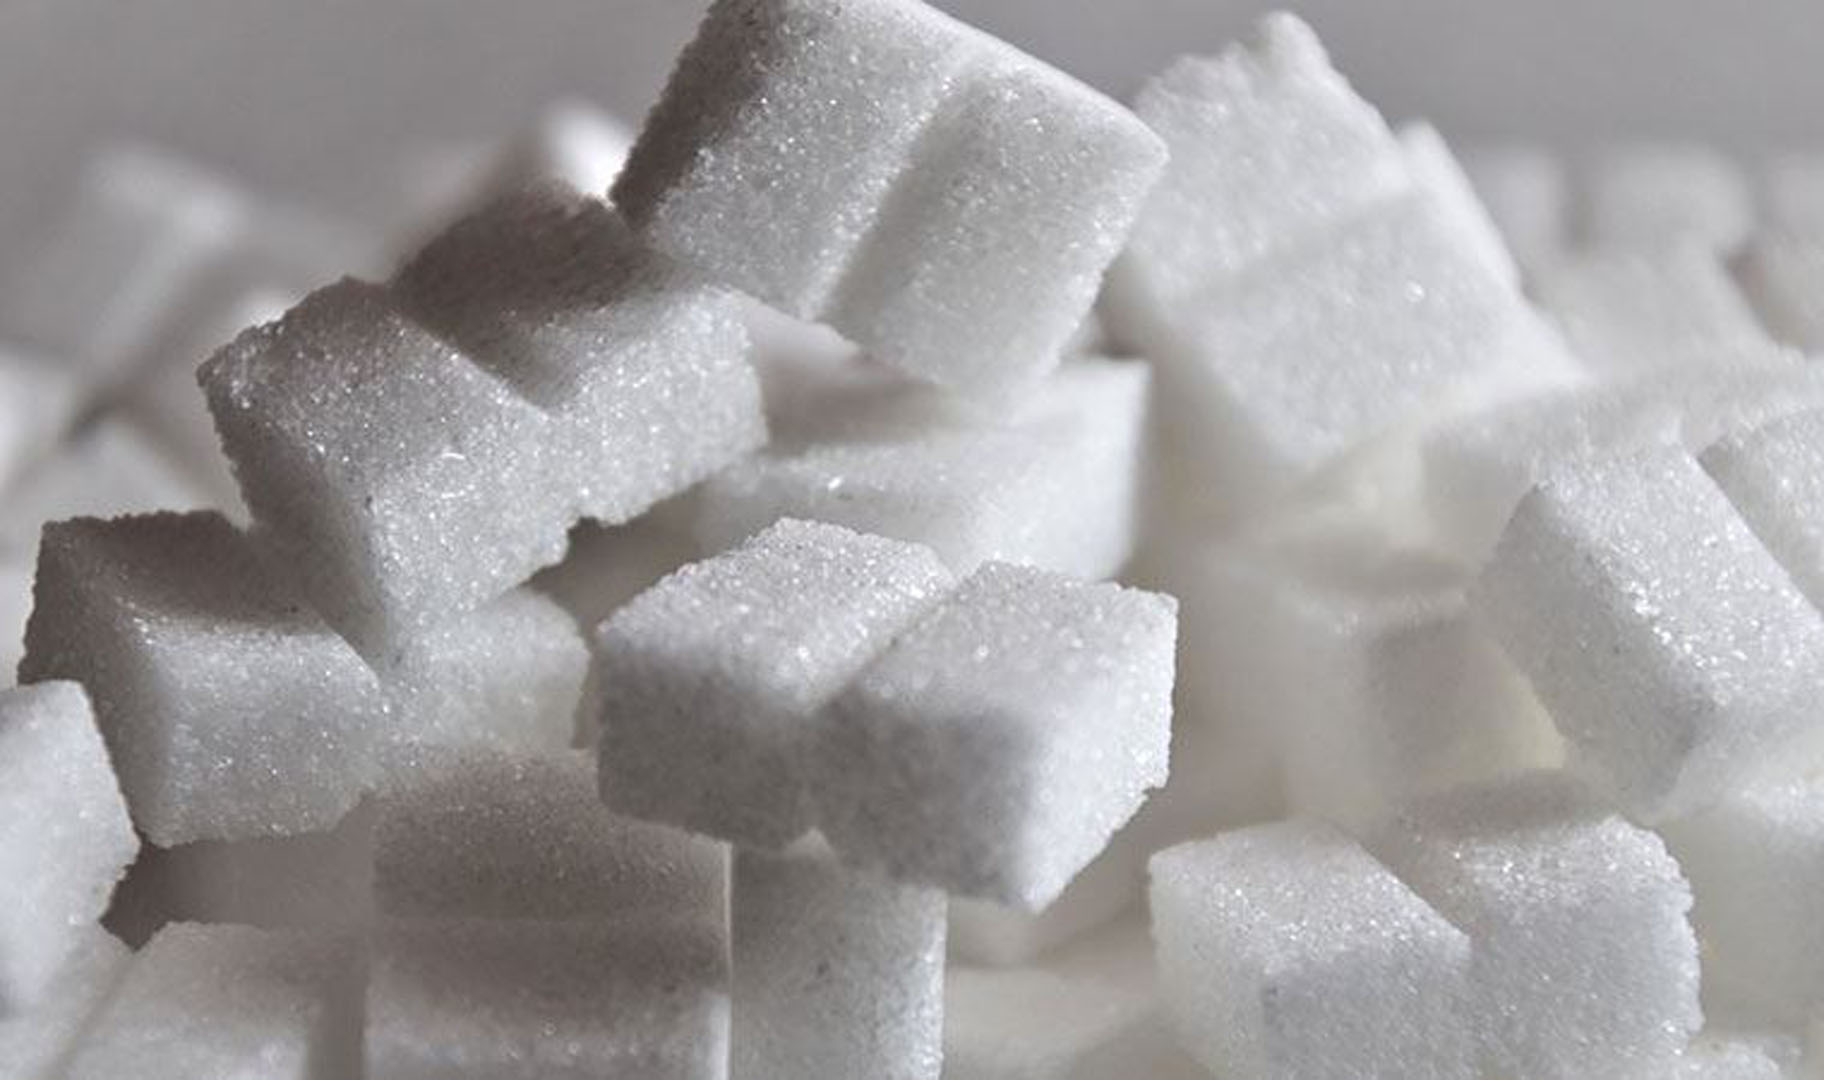 Şeker fiyatlarına ithalat çözümü! Gümrük ücreti alınmayacak